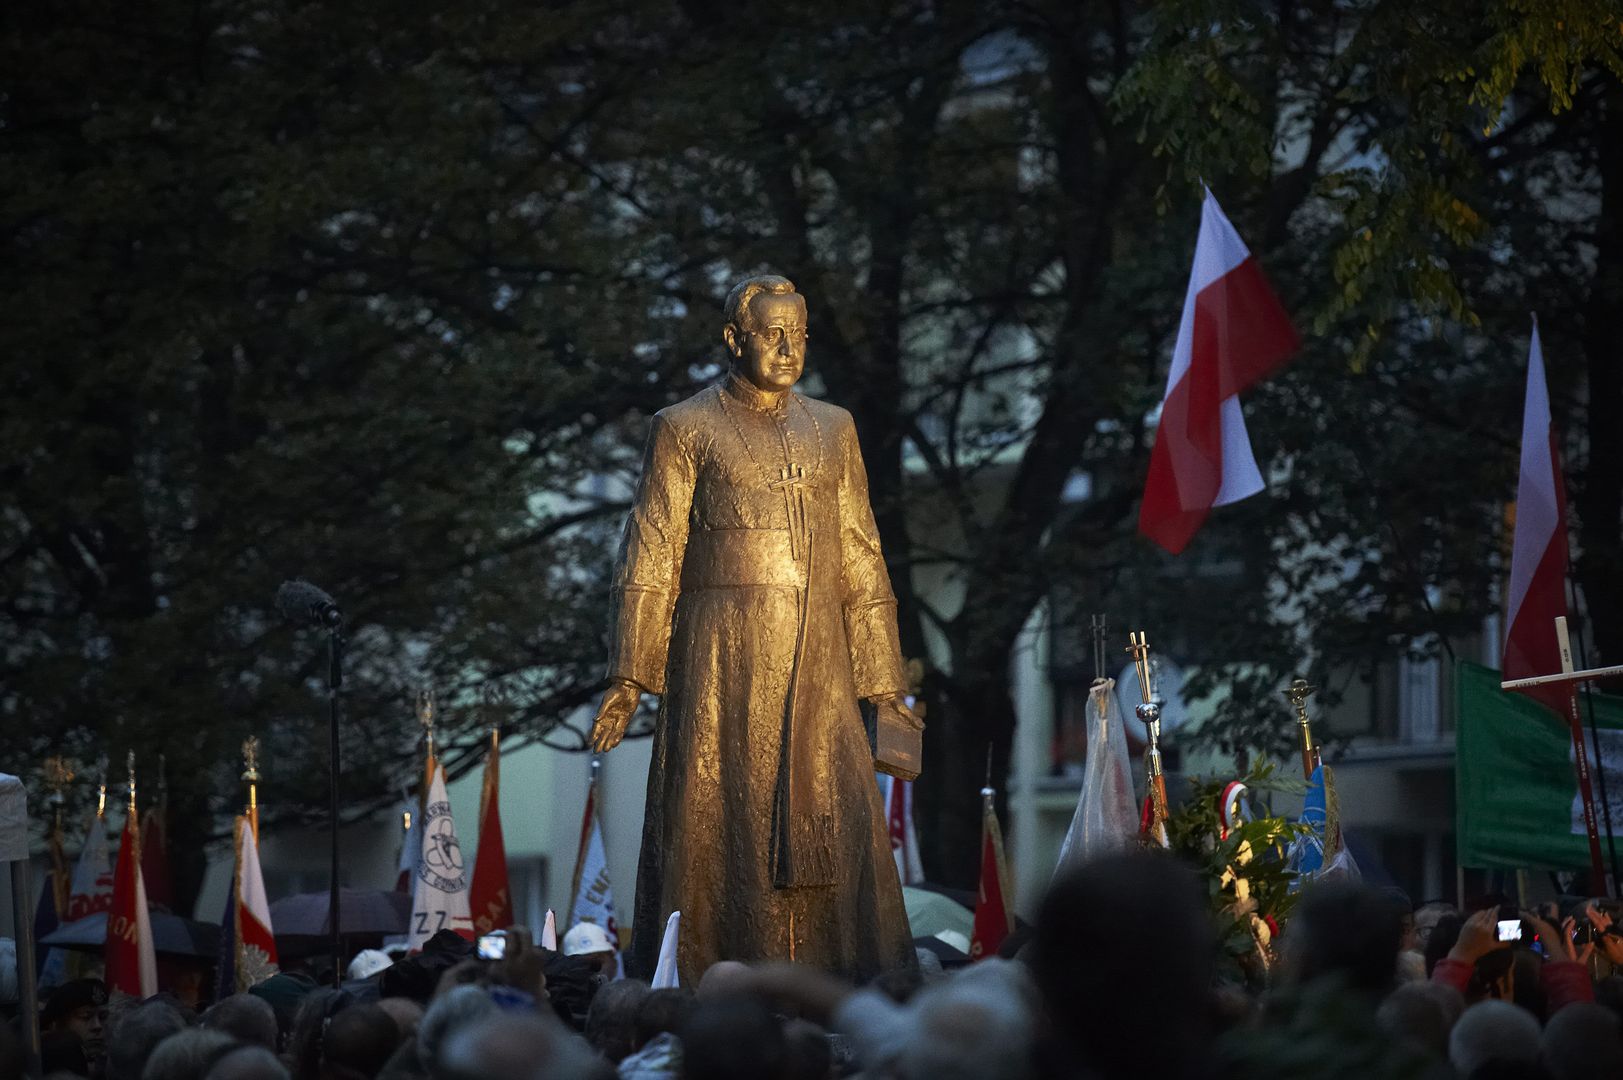 Pomnik ks. Henryka Jankowskiego odsłonięto w 2012 roku